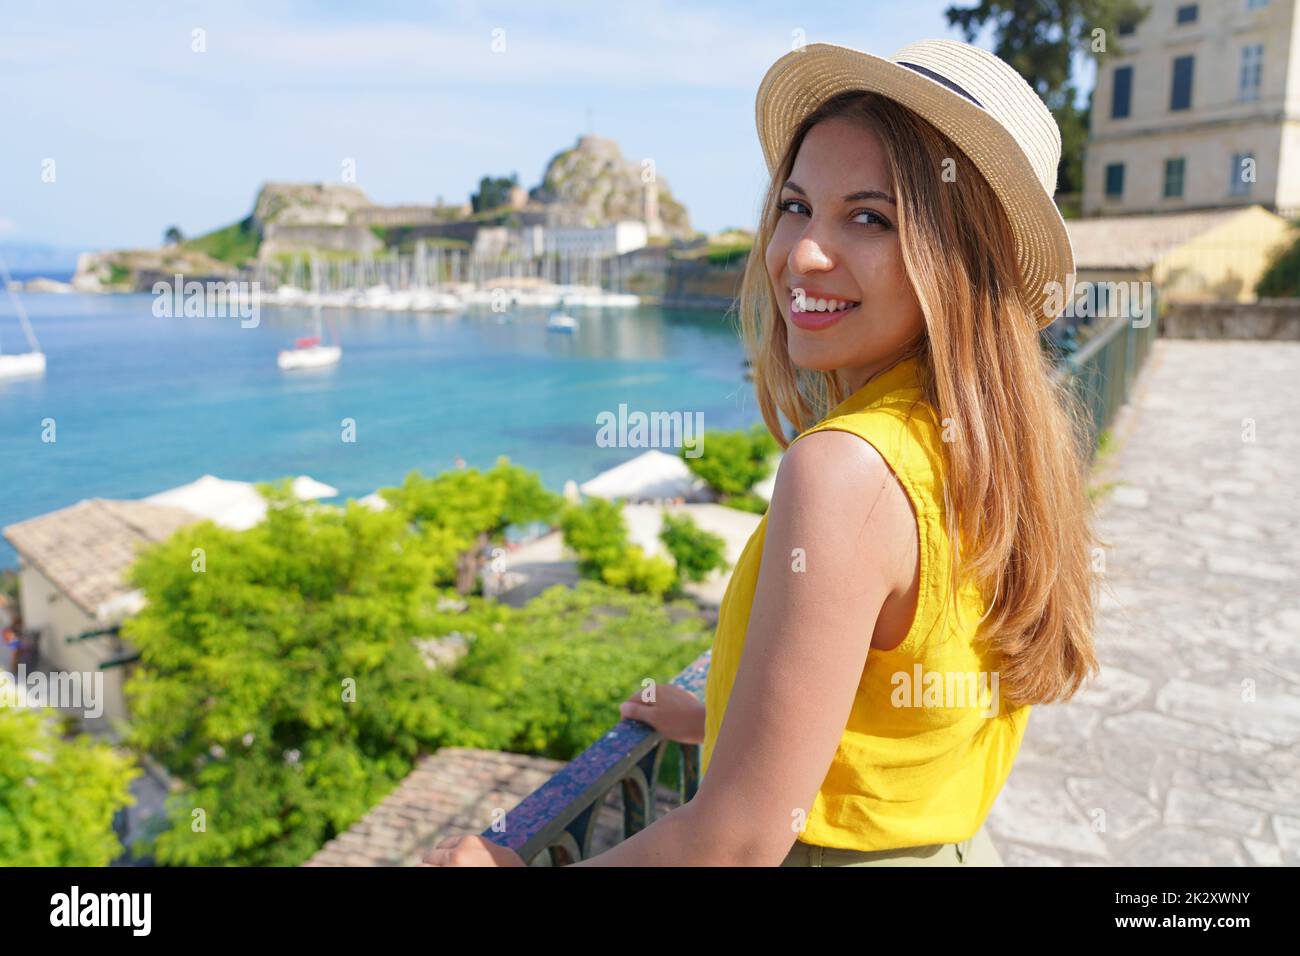 Urlaub in Griechenland. Porträt einer jungen attraktiven Frau, die die Kamera anschaut. Lächelndes Mädchen auf Korfu, Griechenland. Stockfoto